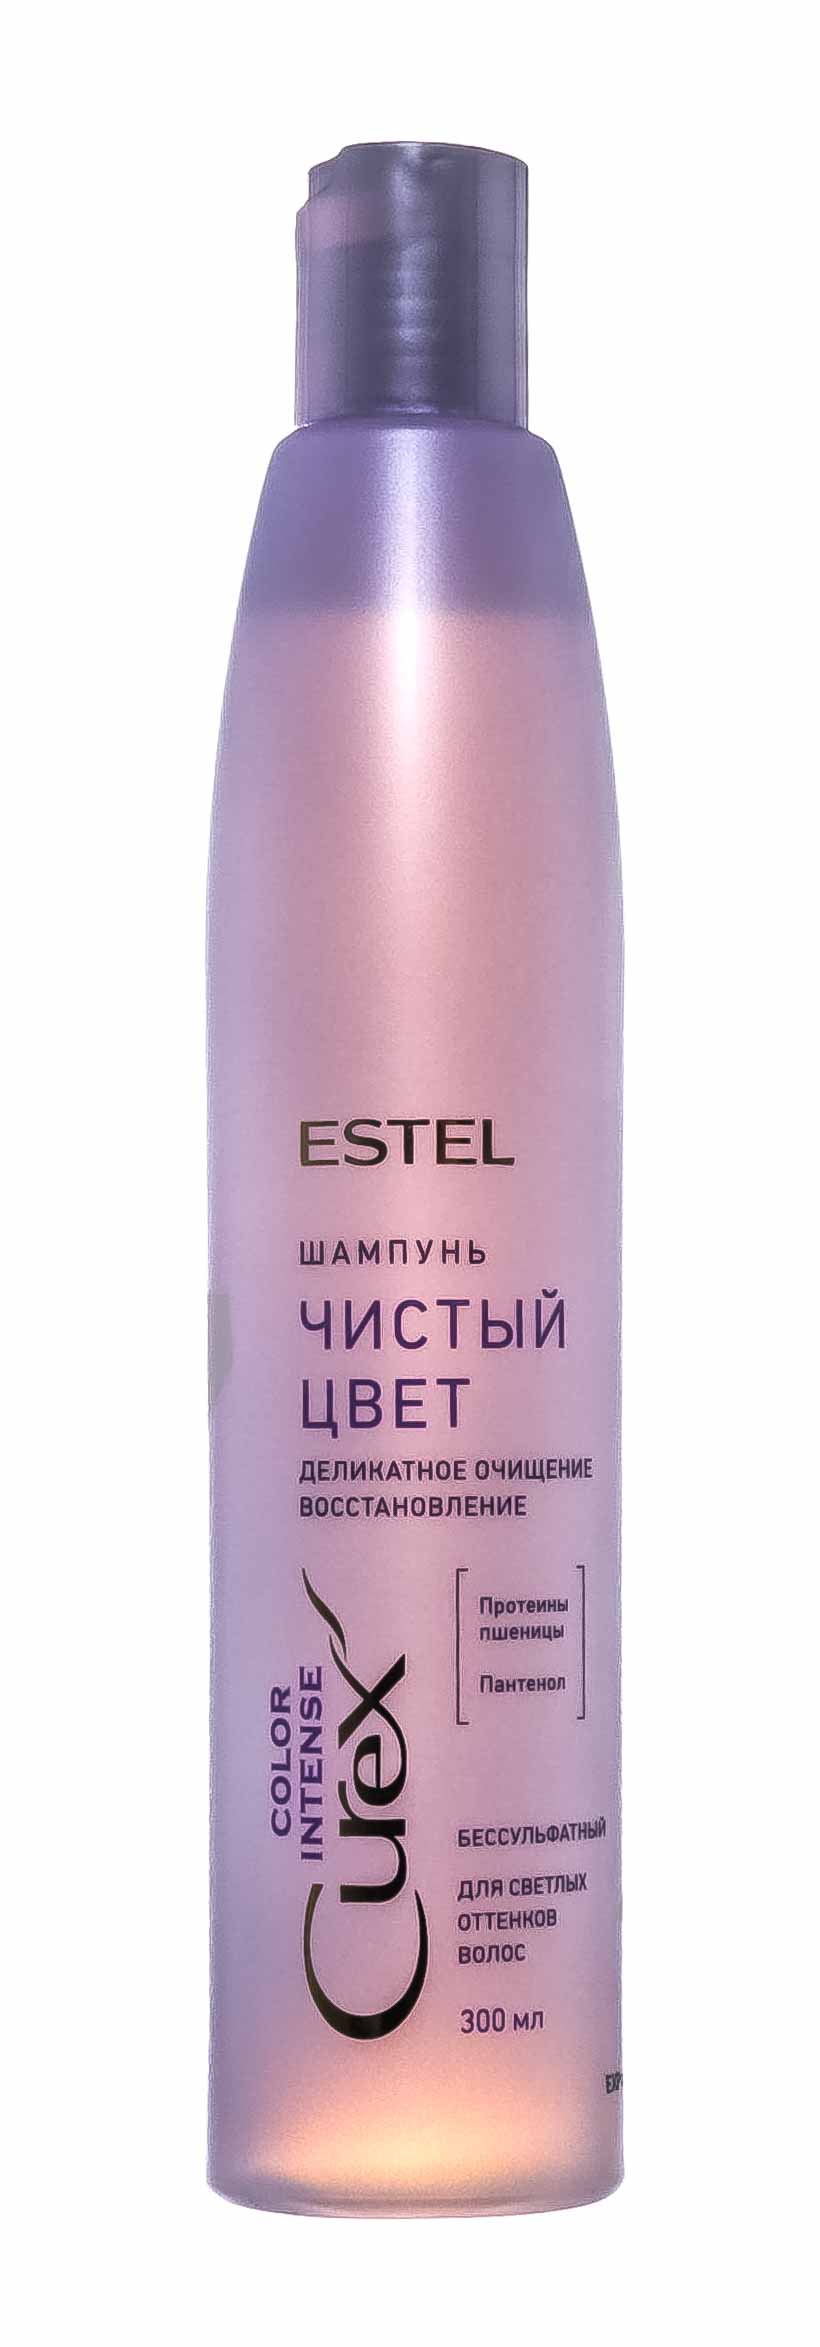 Купить Estel Шампунь Чистый цвет для светлых оттенков волос, 300 мл (Estel, Curex), Россия